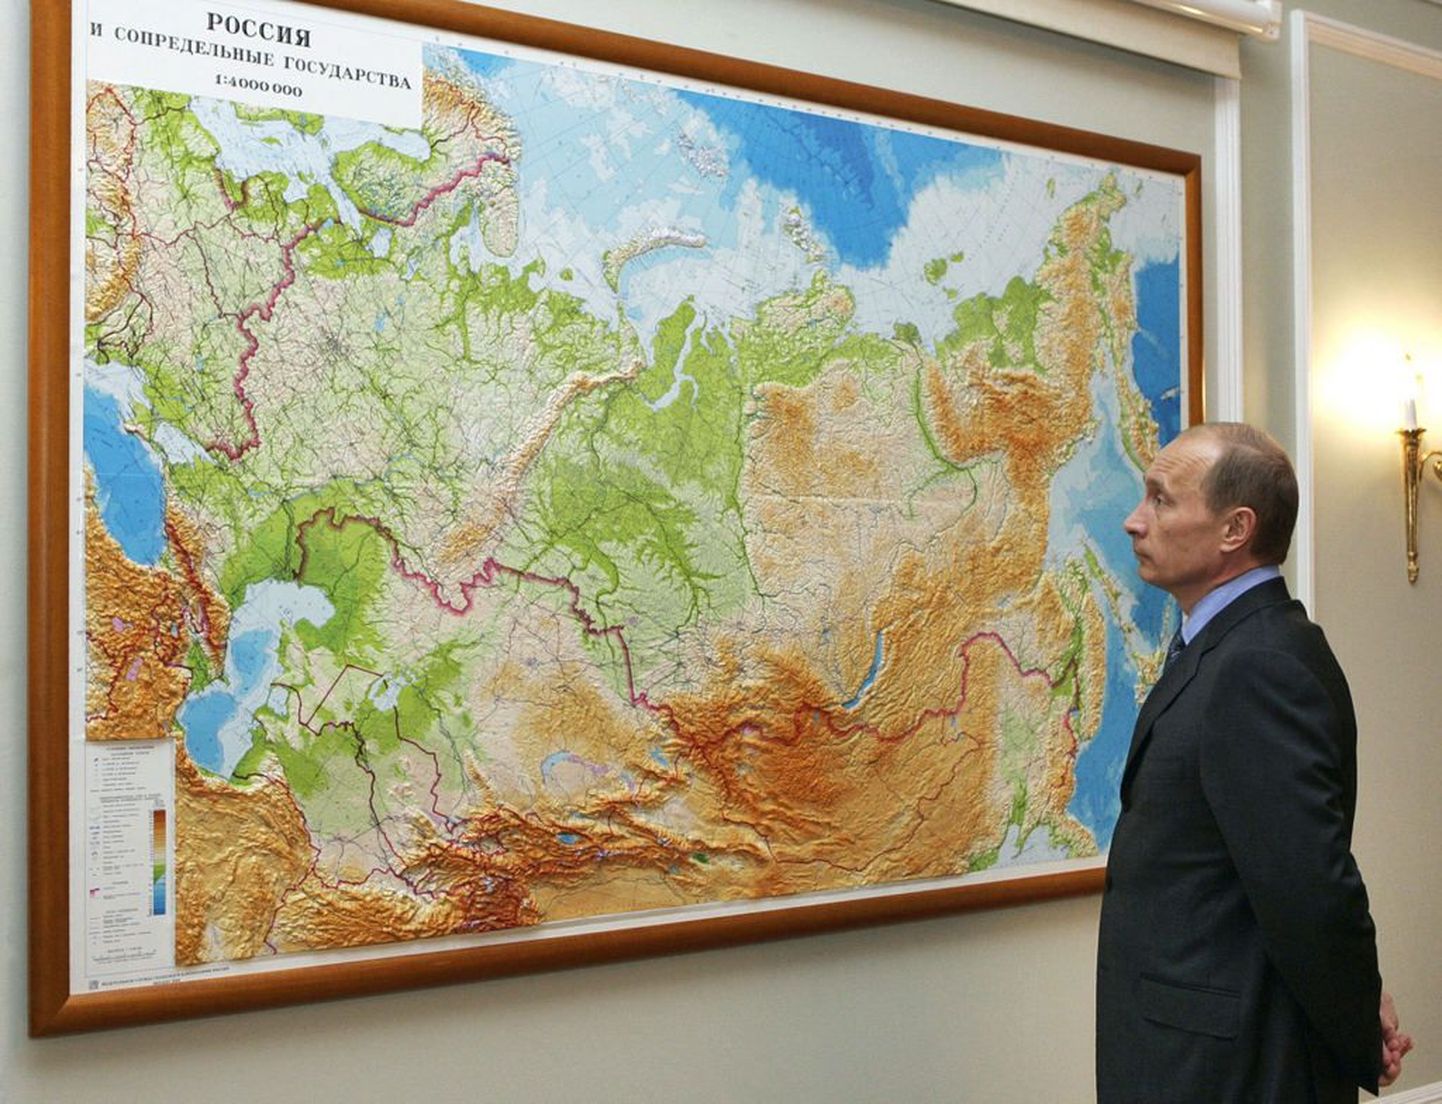 Venemaa geograafilist kaarti uurib peaminister Vladimir Putin. Riik soovib saada WTO liikmeks.  .